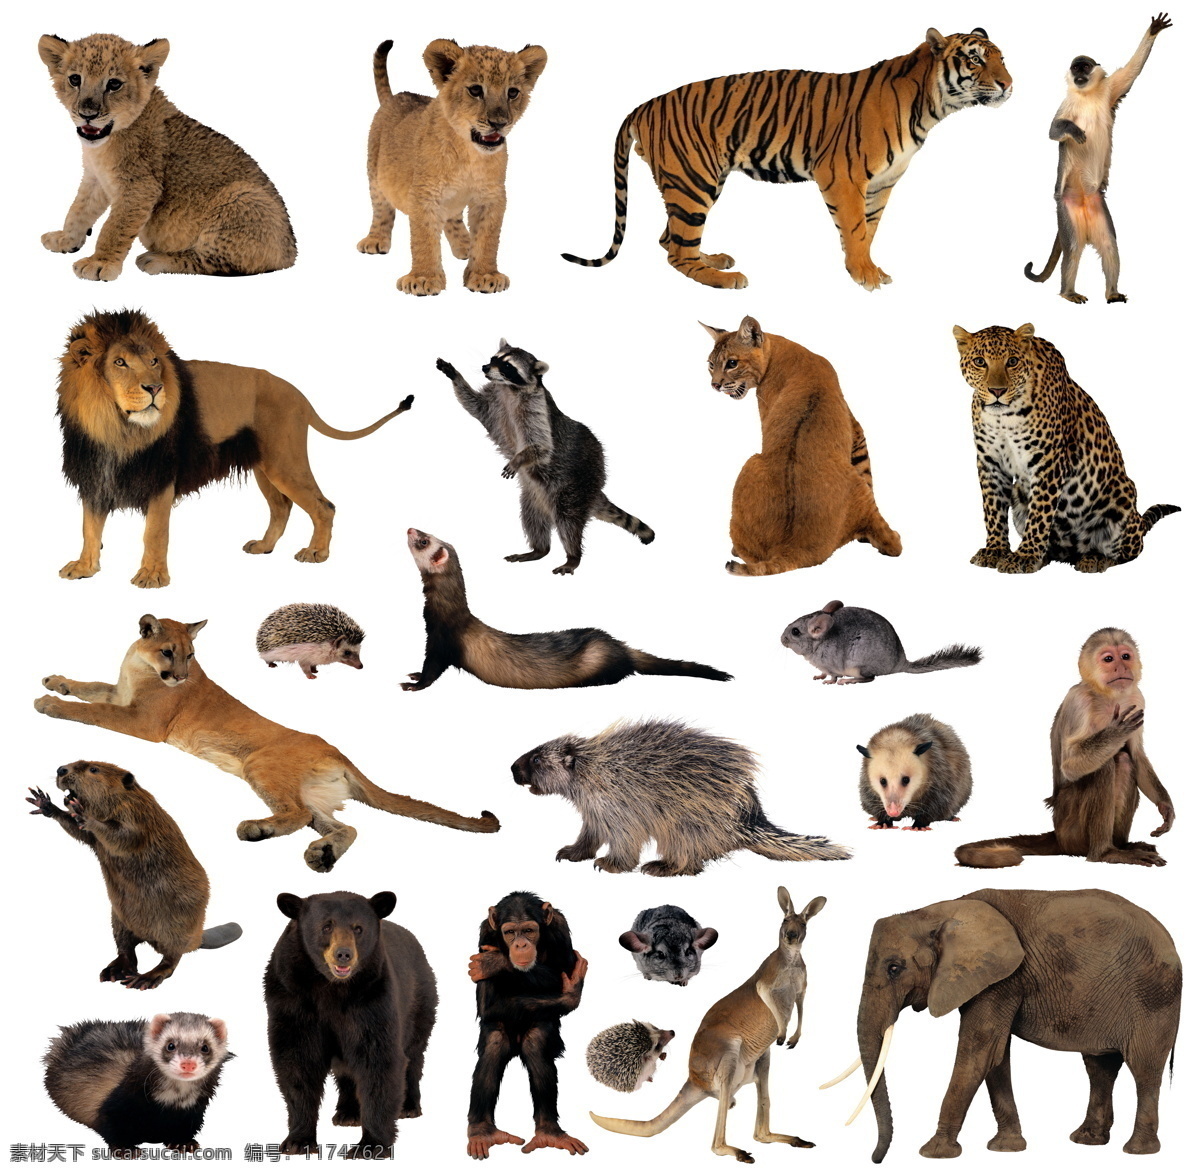 动物摄影 老虎 狮子 猩猩 老鼠 大象 野生动物 草原动物 高清 非洲动物 生物世界